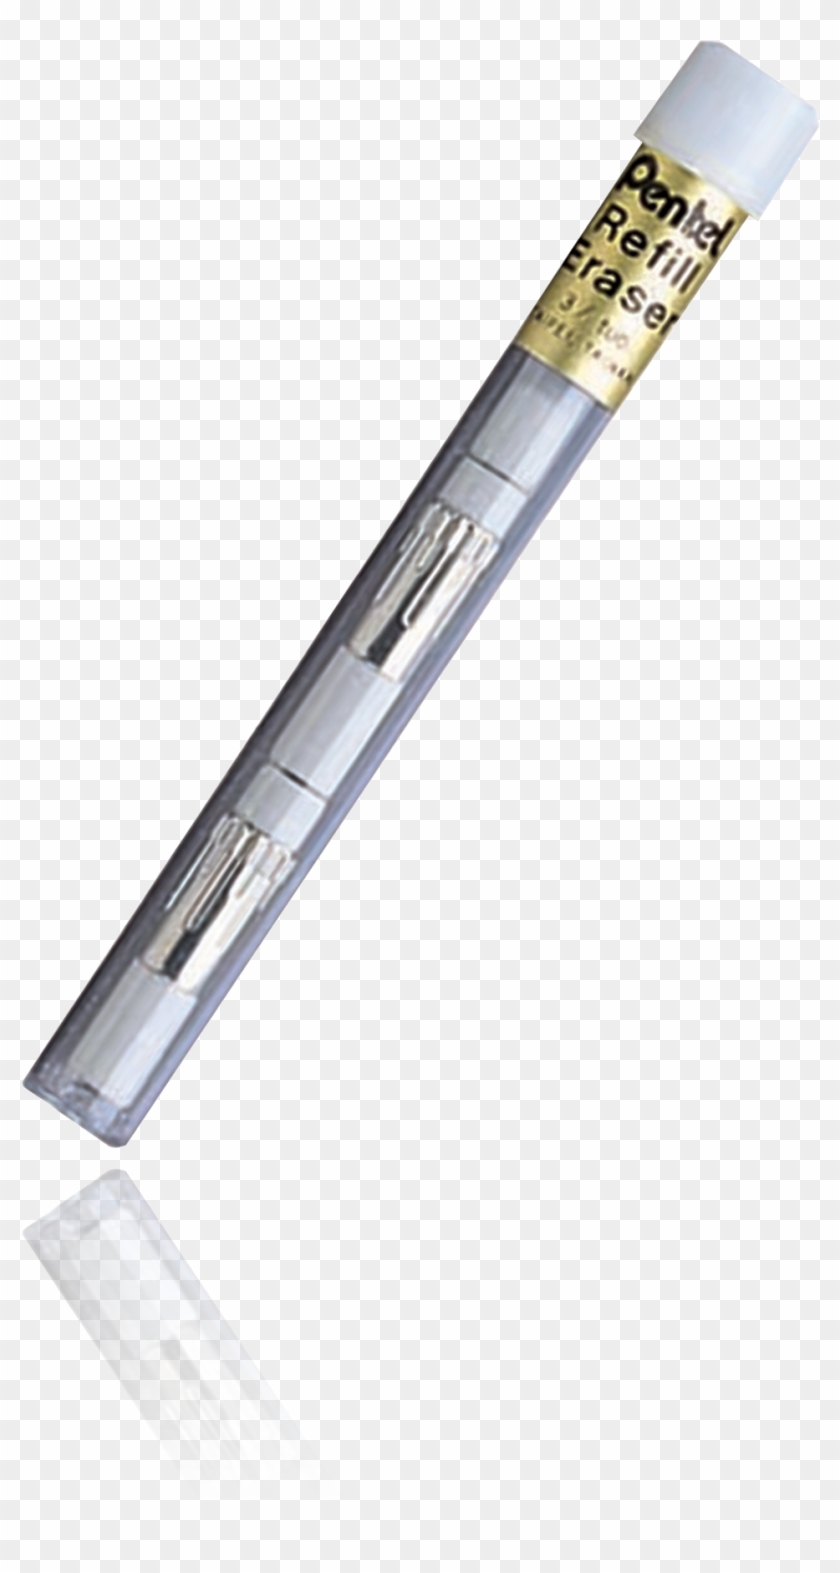 Z2-1 Refill Eraser - Mechanical Pencil #744552